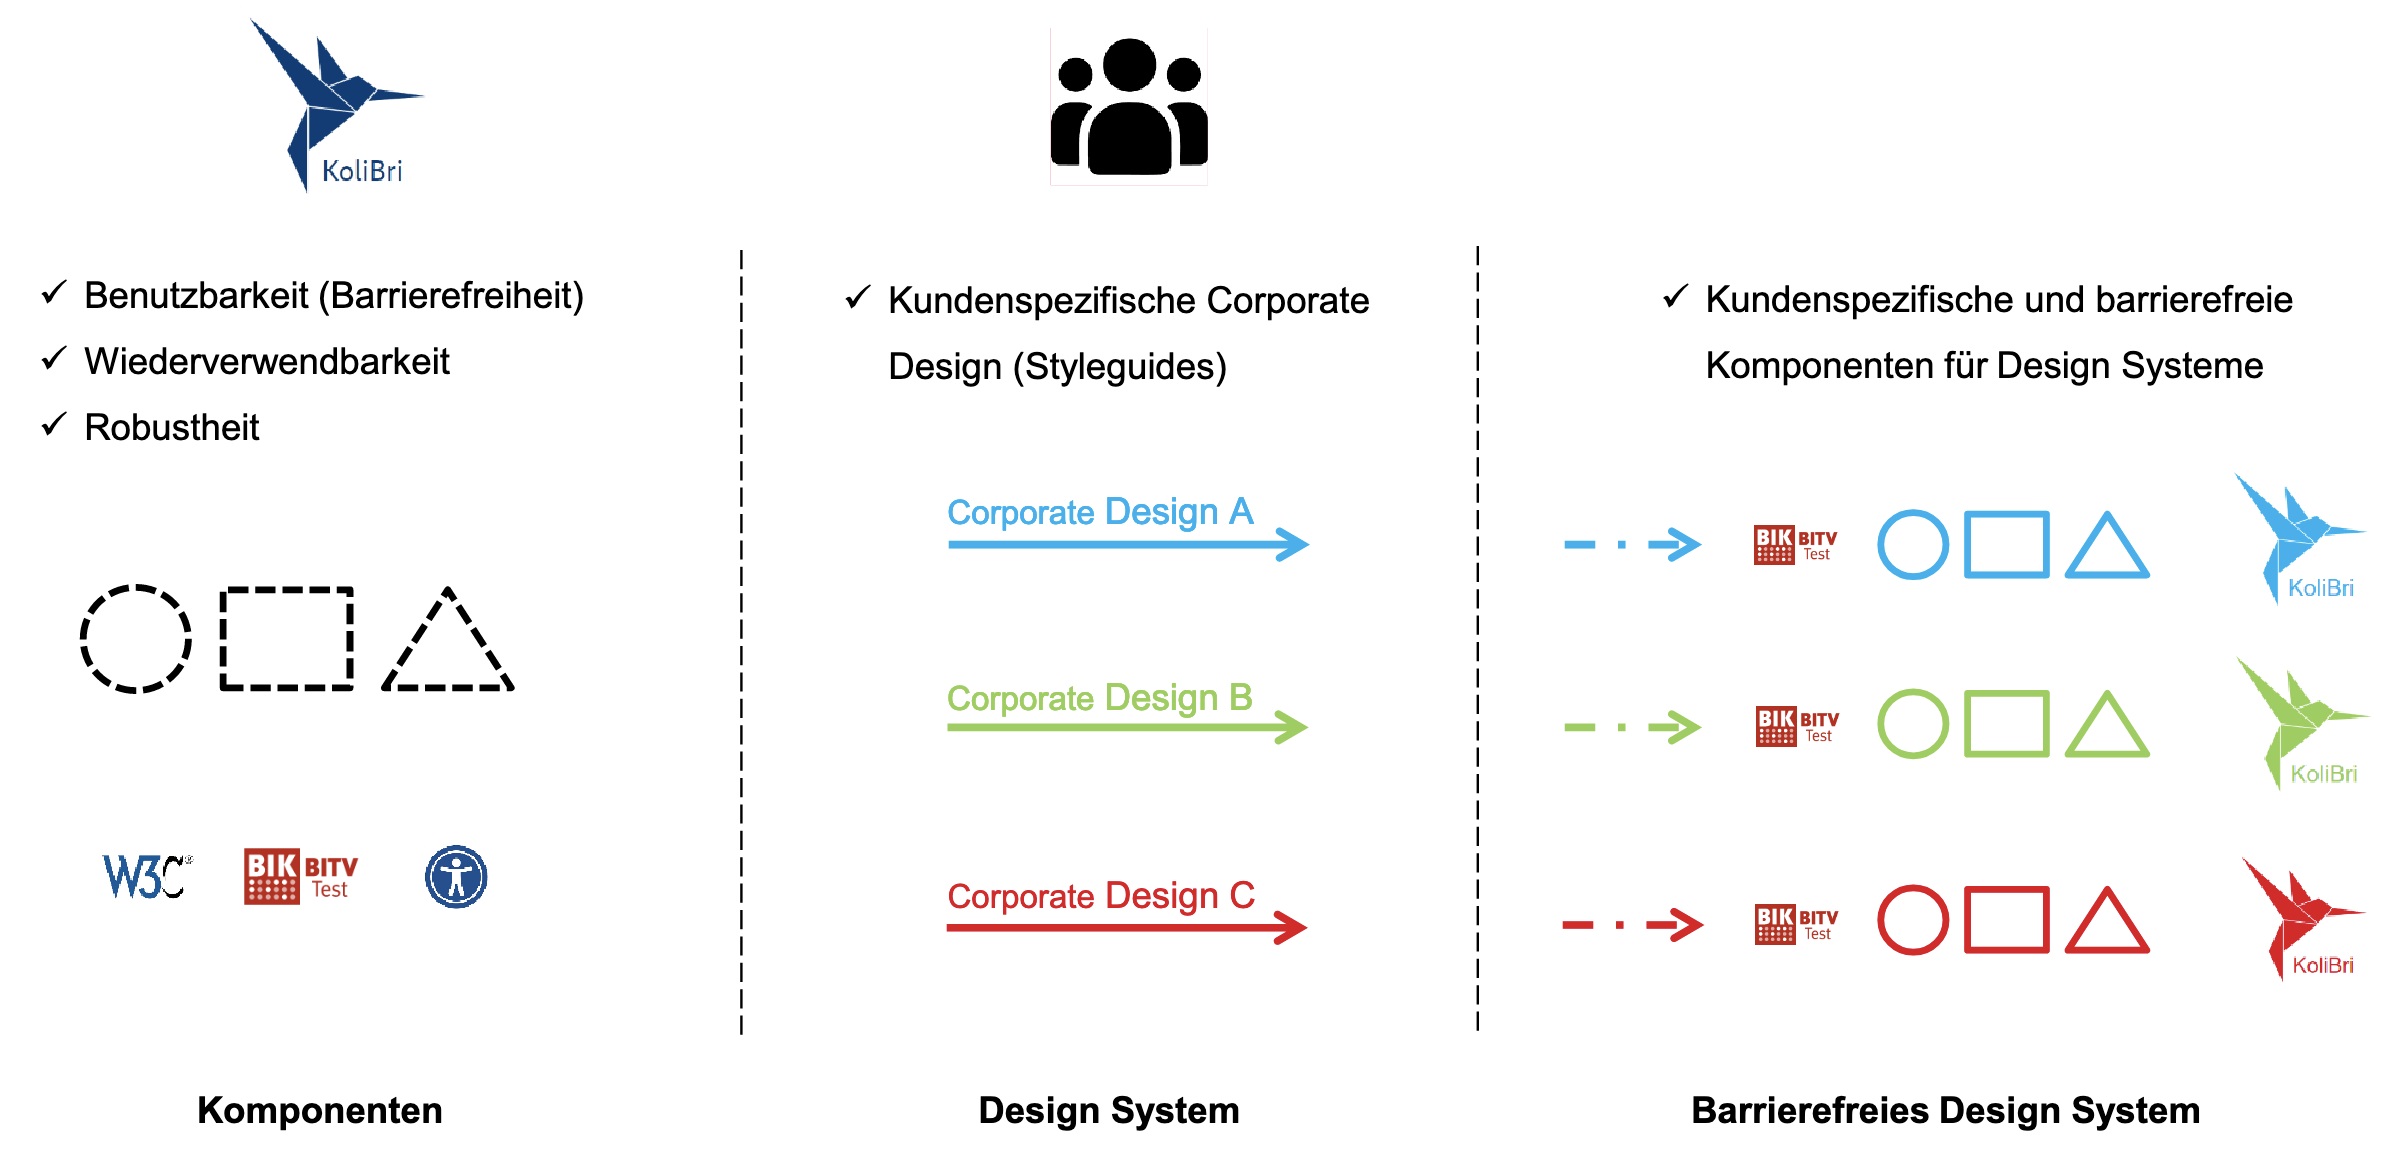 Darstellung, wie die Komponenten mittels verschiedener Styleguides zu kundenspezifischen Komponenten werden.